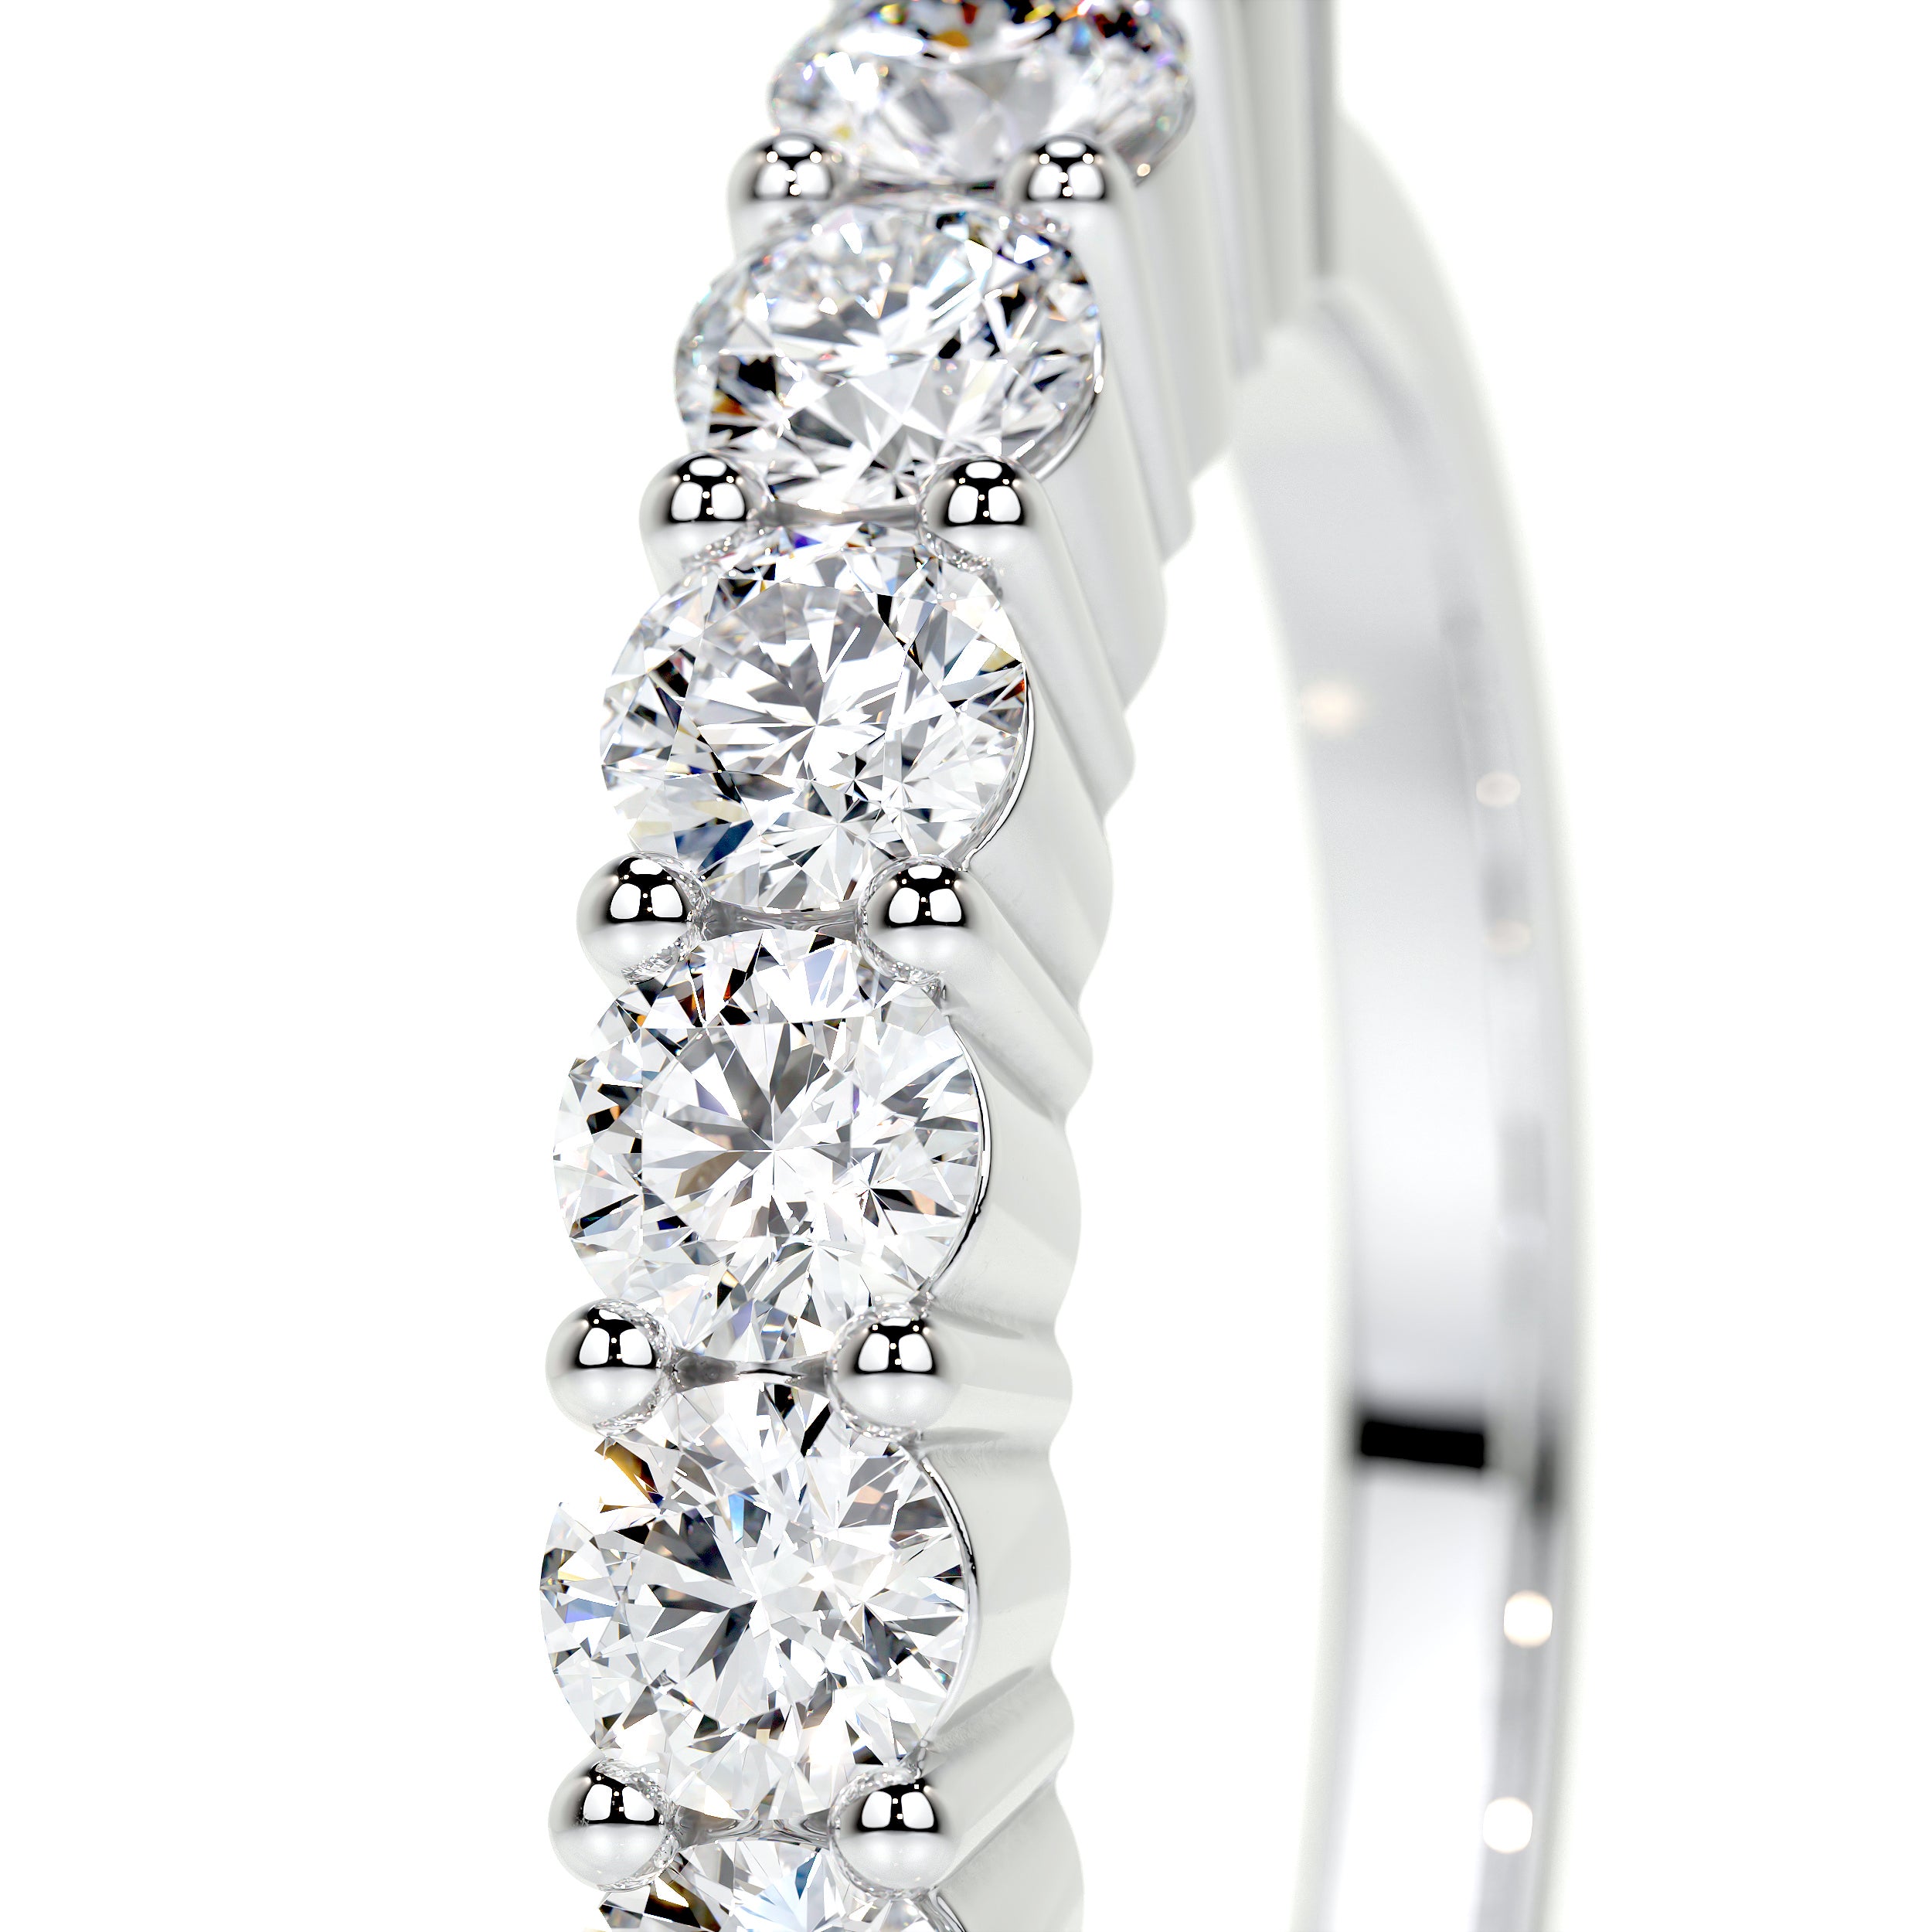 Catherine Lab Grown Diamond Wedding Ring   (0.75 Carat) -14K White Gold